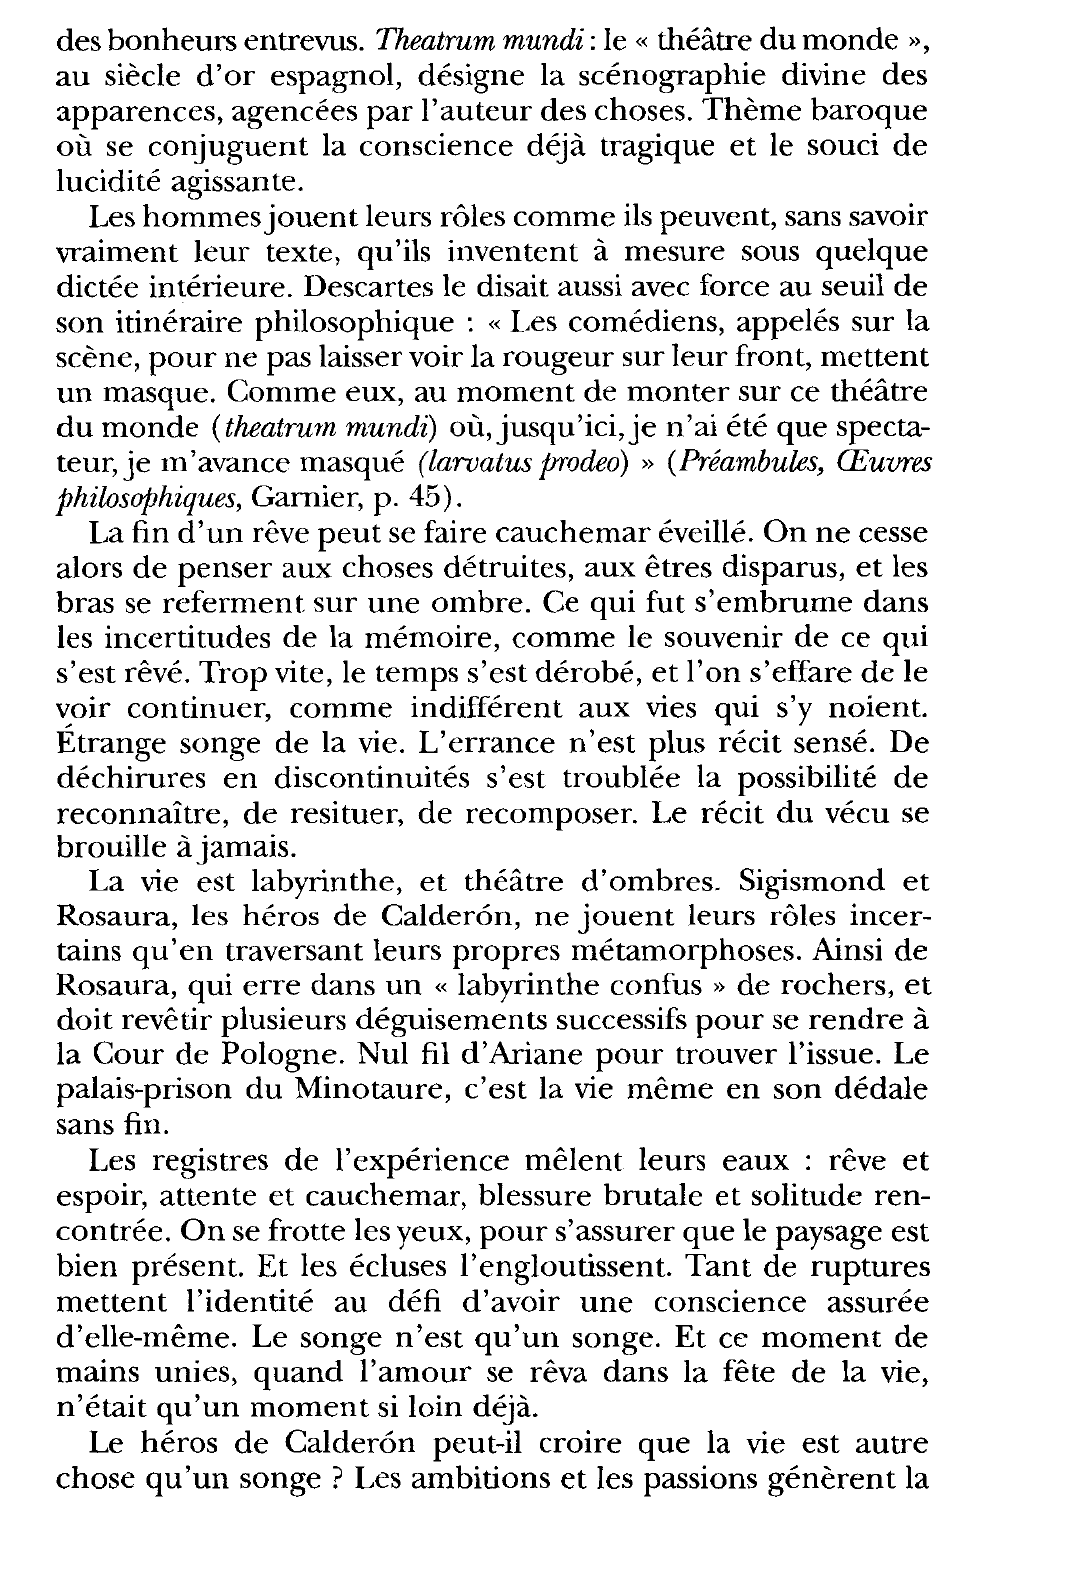 Prévisualisation du document Le songe de la vie - Calderon de la Barca, La vida es sumo [La vie est un songe], deuxième journée, vers 2288-2293, traduction originale.